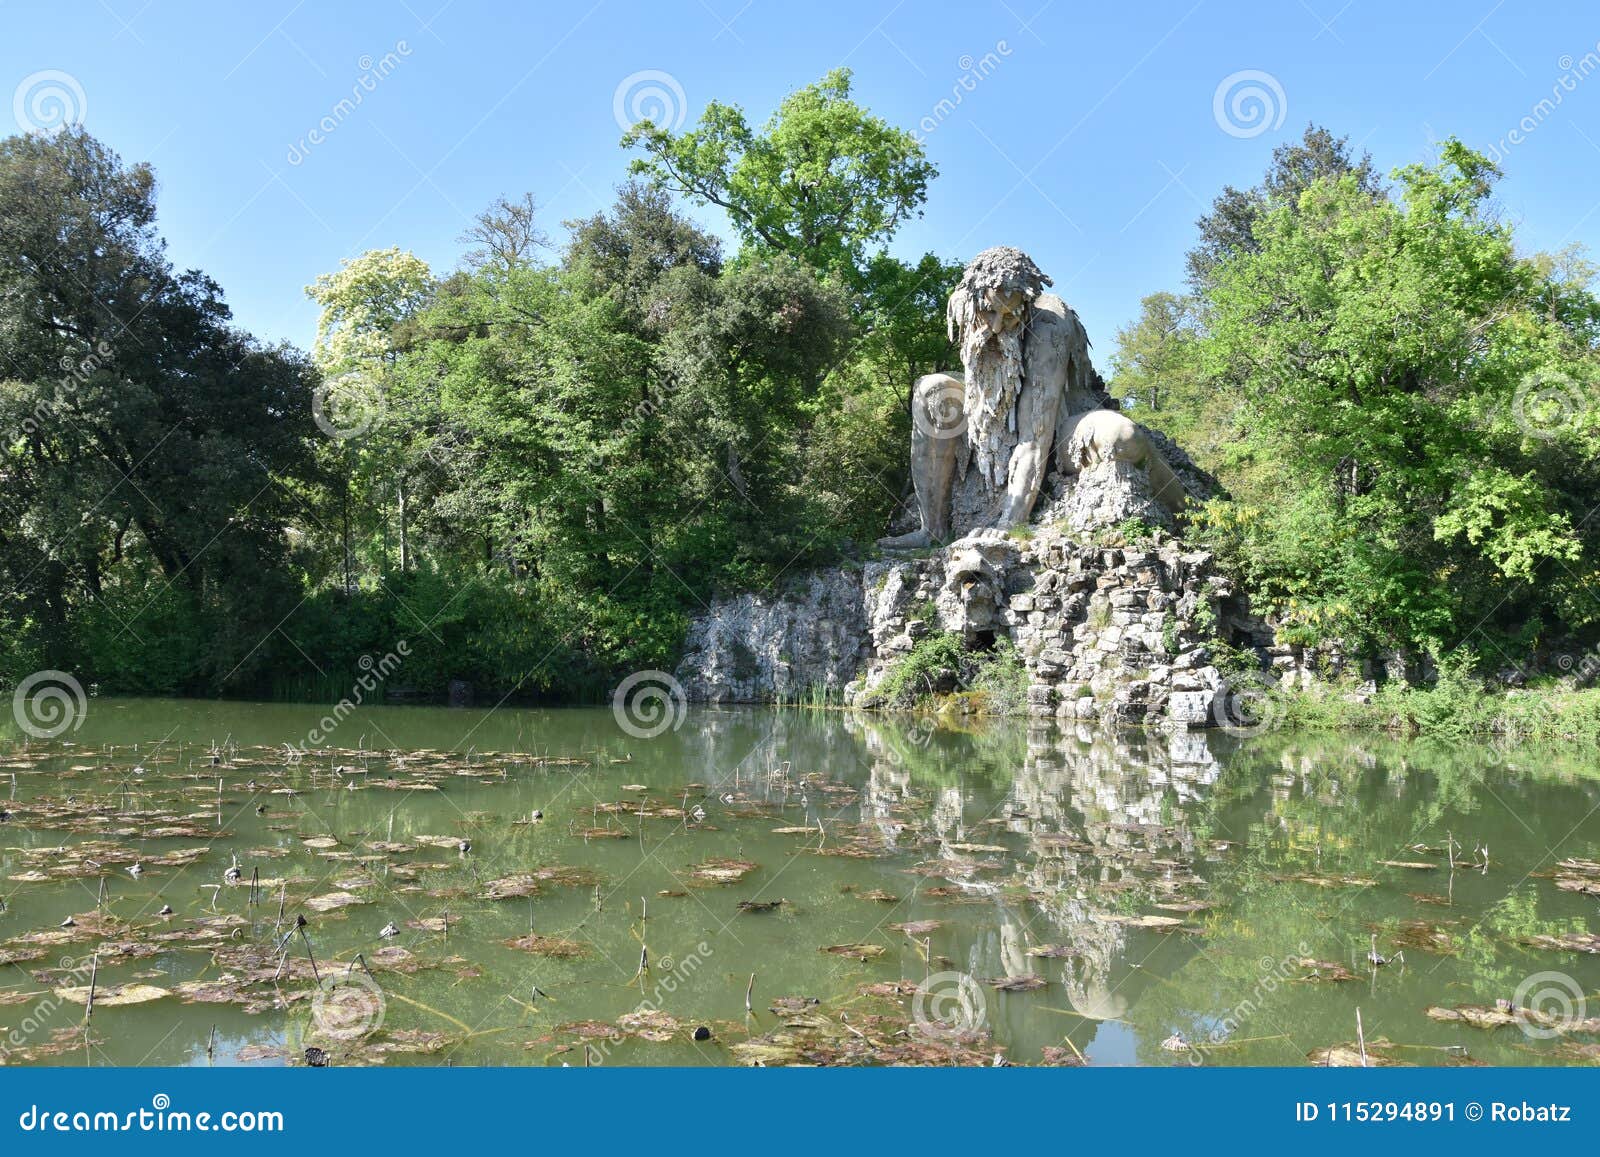 the colosso dell`appennino del giambologna 1580, sculpture located in florence in the public park of villa demidoff